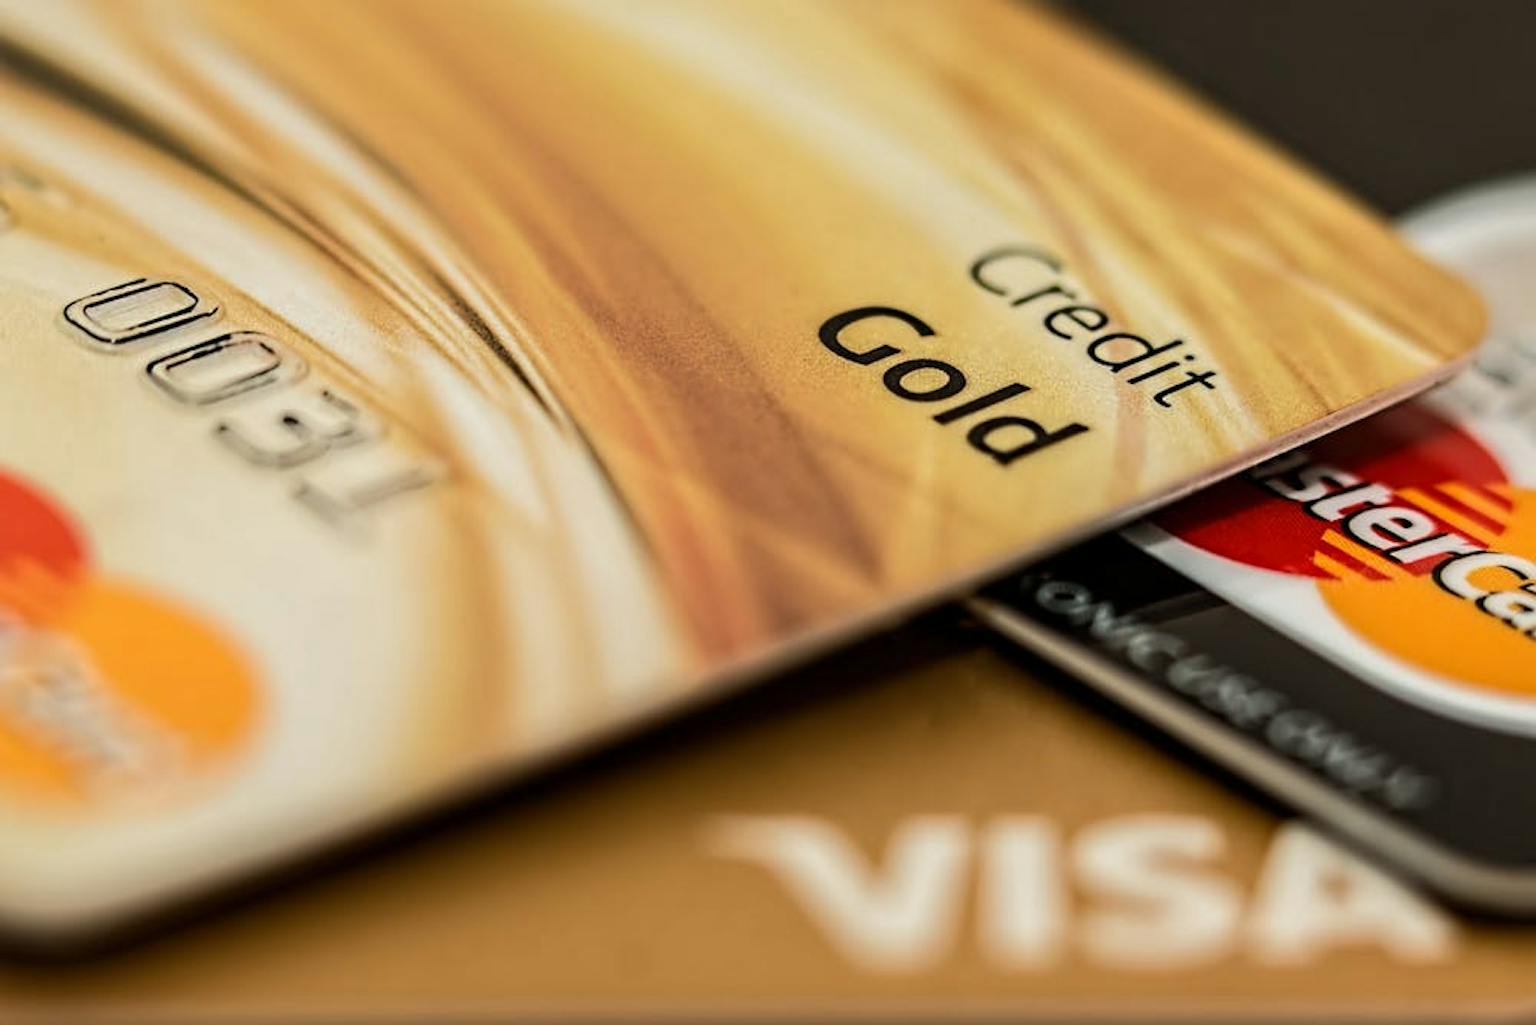 Salah Satu Perbedaan Kartu Kredit Dan Kartu Debit Adalah Skema Transaksinya